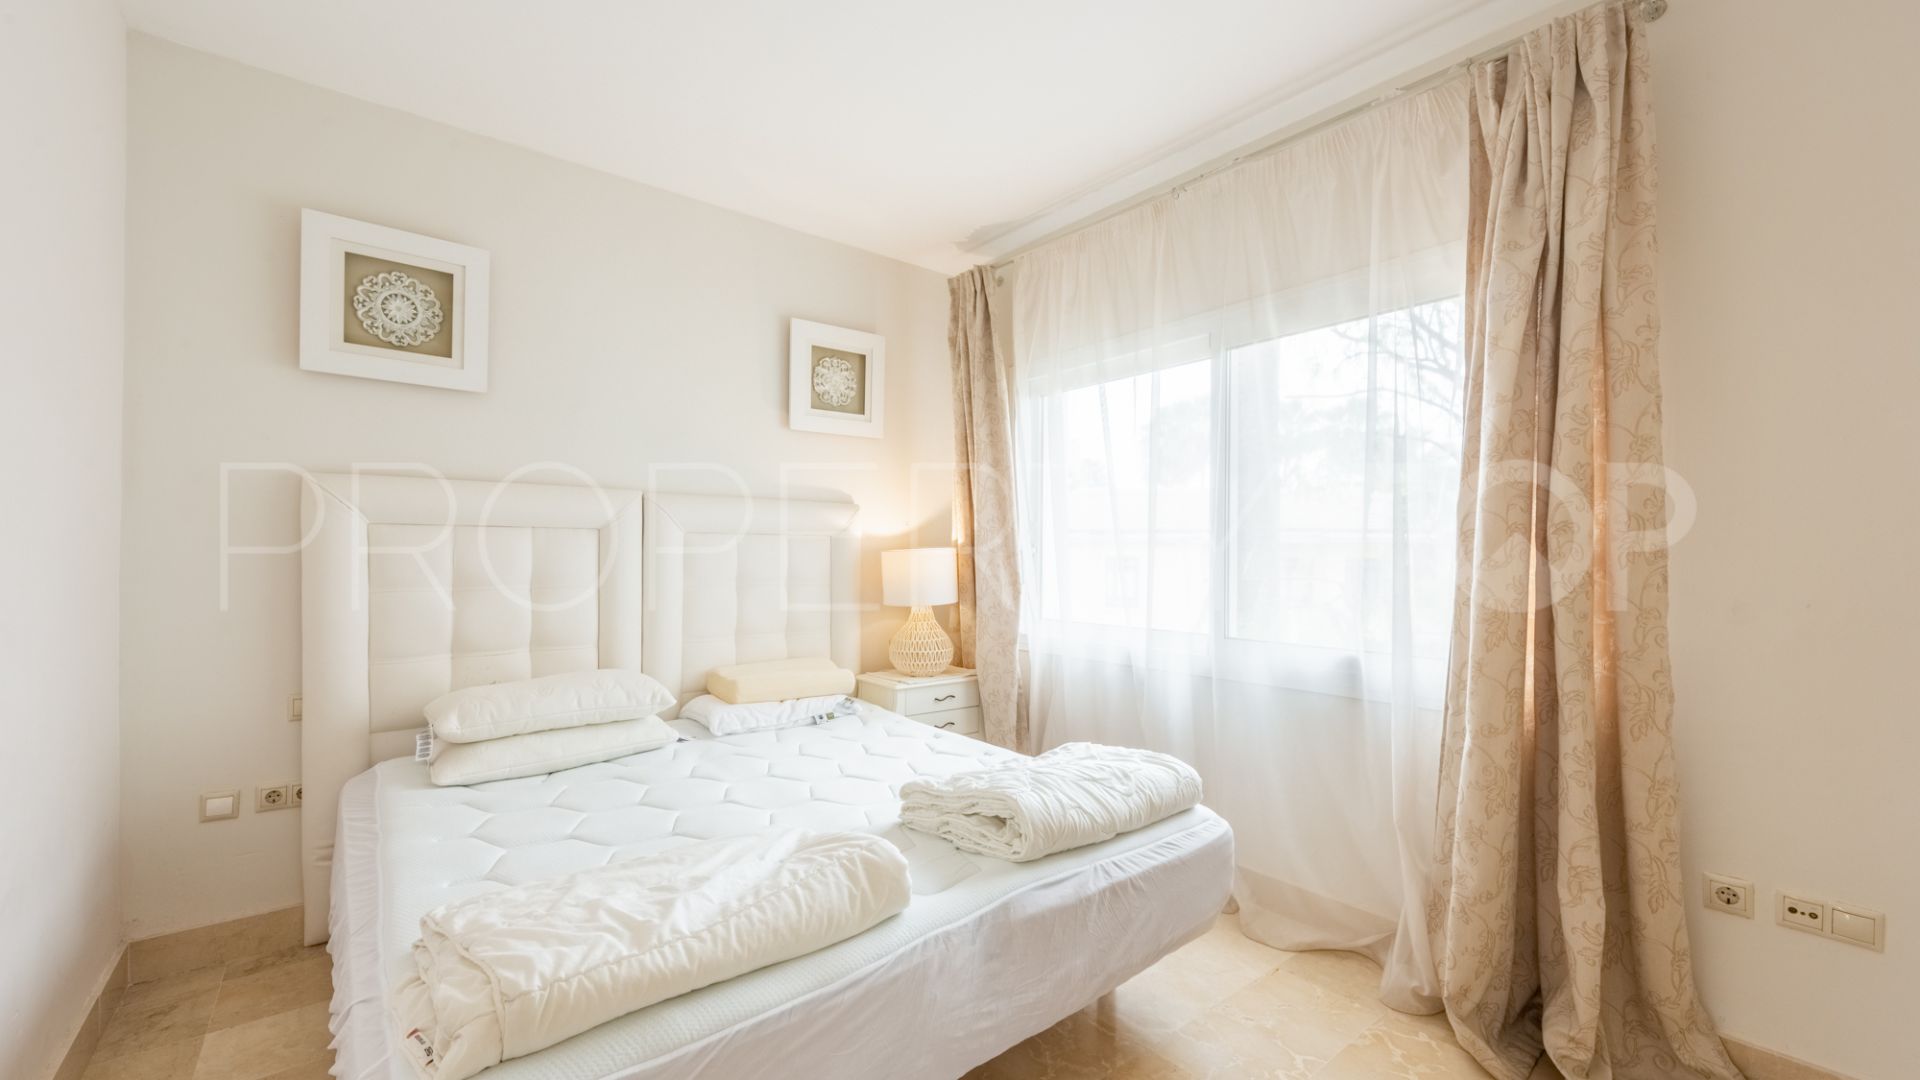 For sale apartment in Jardines de la Aldaba with 2 bedrooms